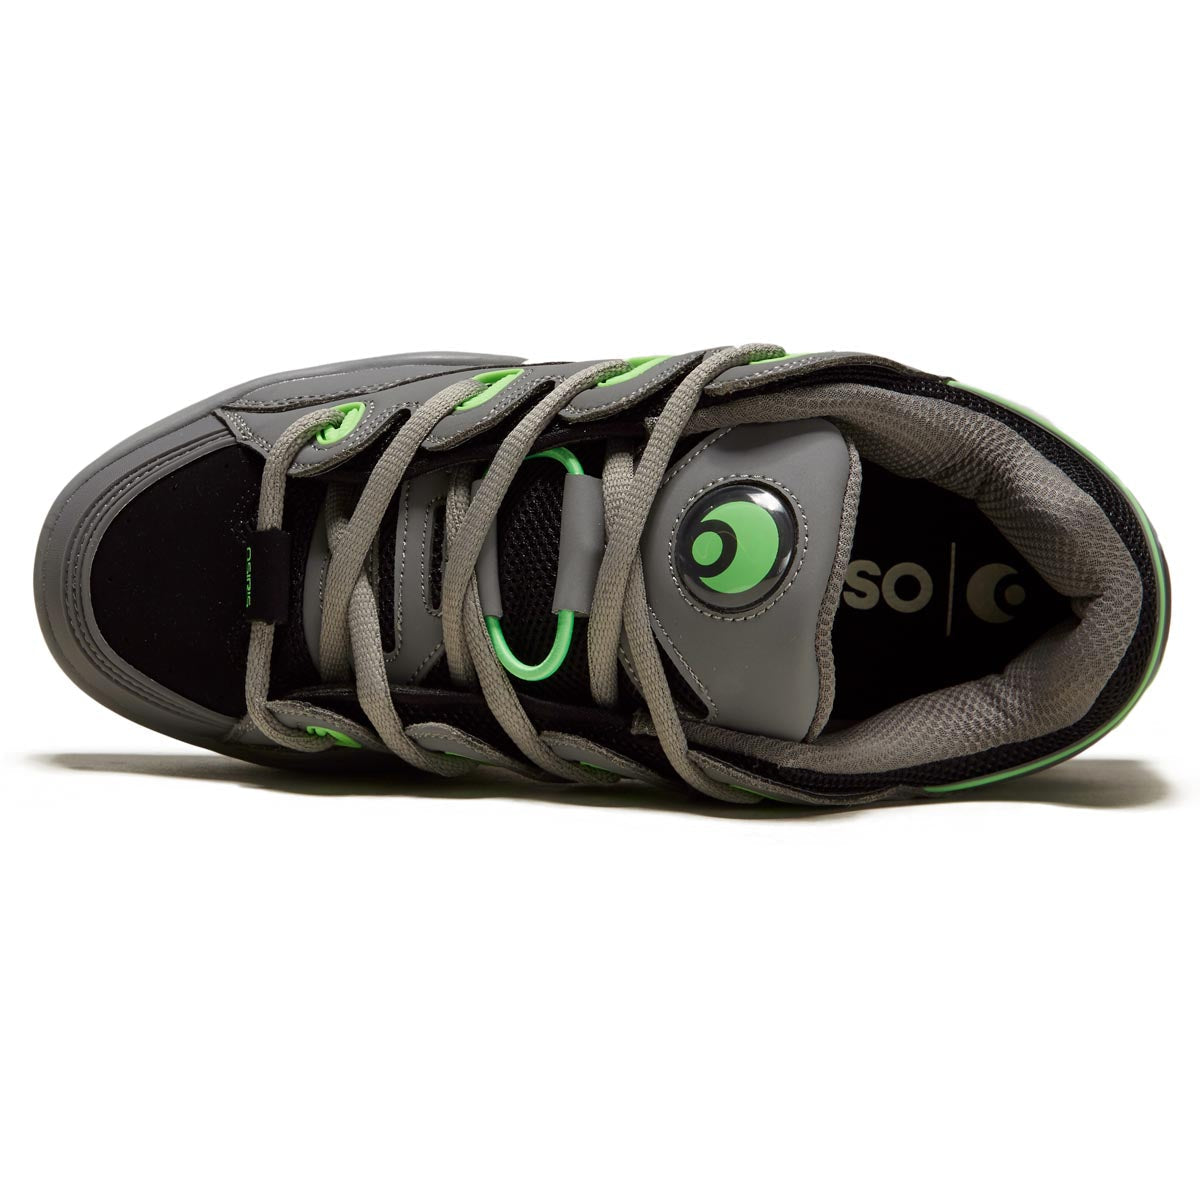 Osiris D3 OG Shoes - Black/Grey/Lime image 3